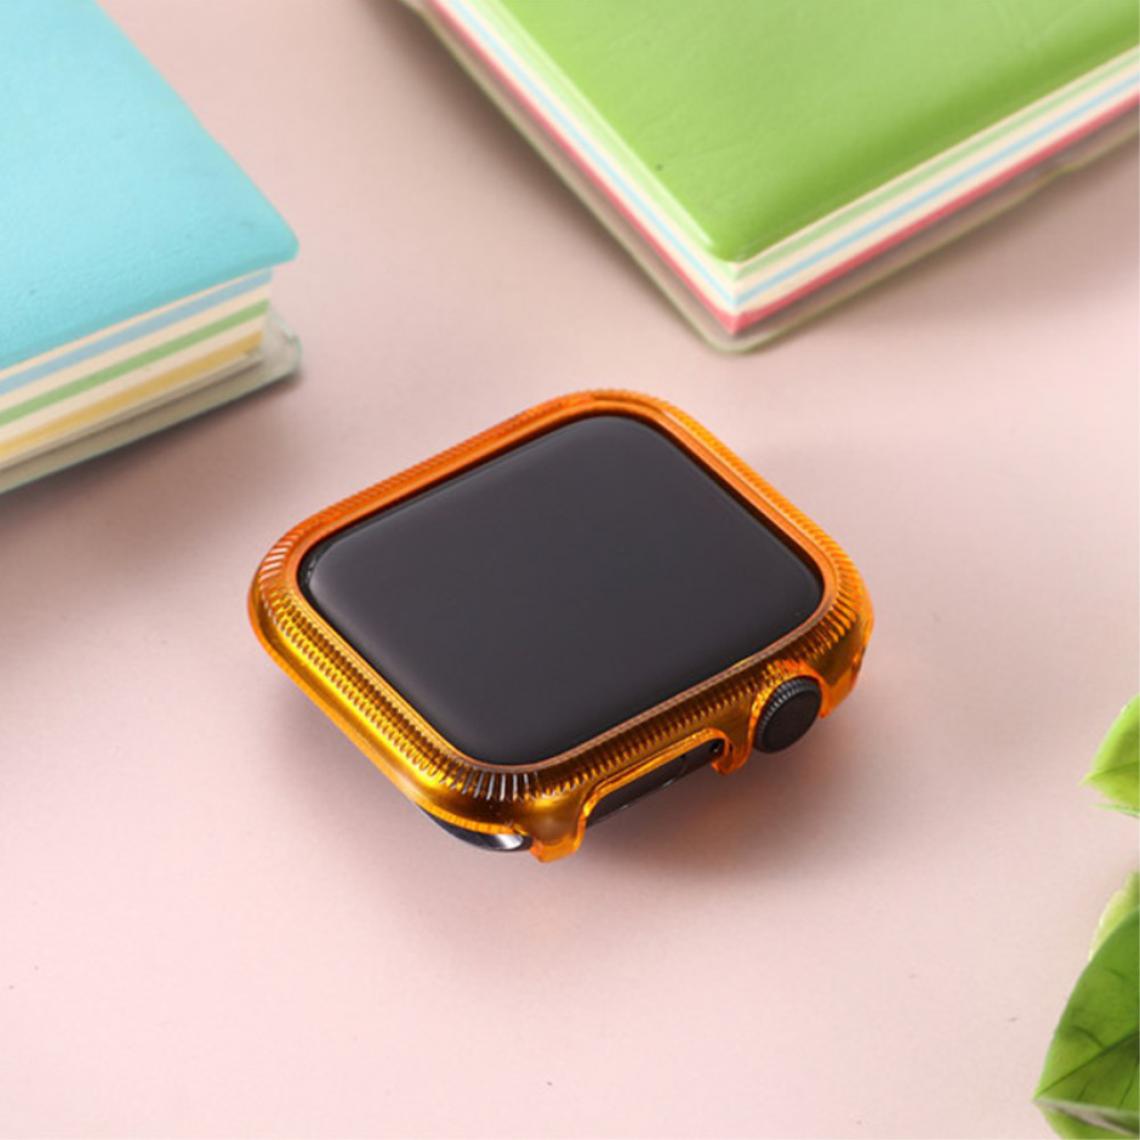 Other - Coque en TPU cadre coloré orange pour votre Apple Watch Series 6/SE/5/4 44mm - Accessoires bracelet connecté